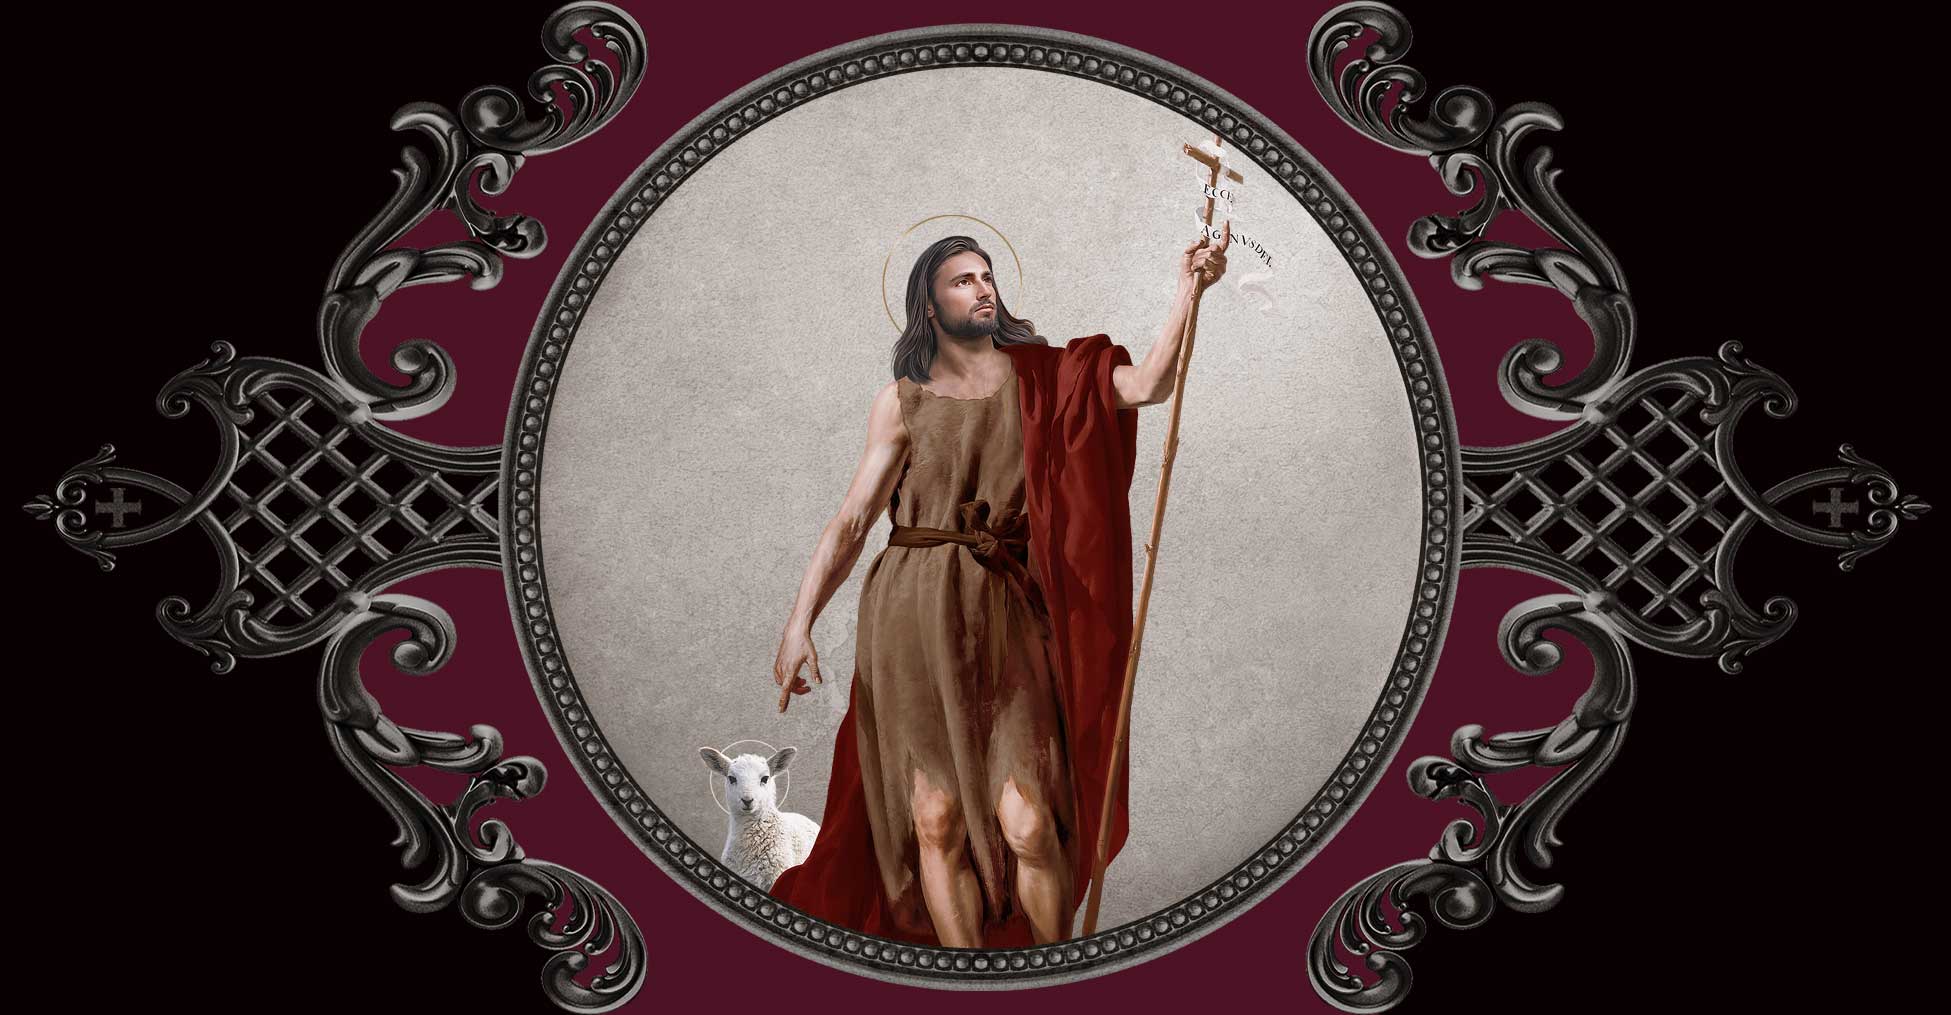 June 24 + Saint John the Baptist - VENXARA®